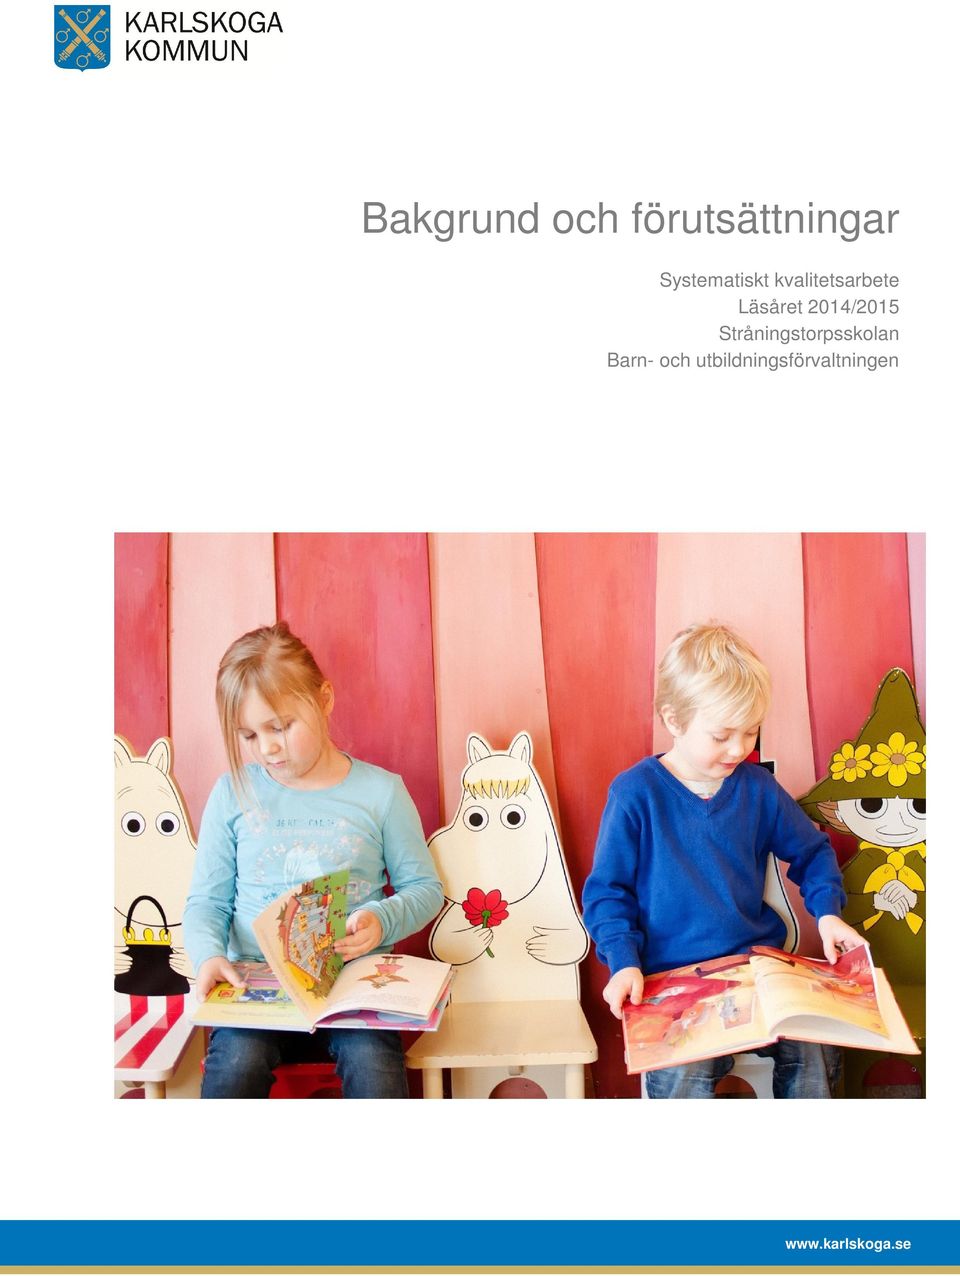 2014/2015 Stråningstorpsskolan Barn-